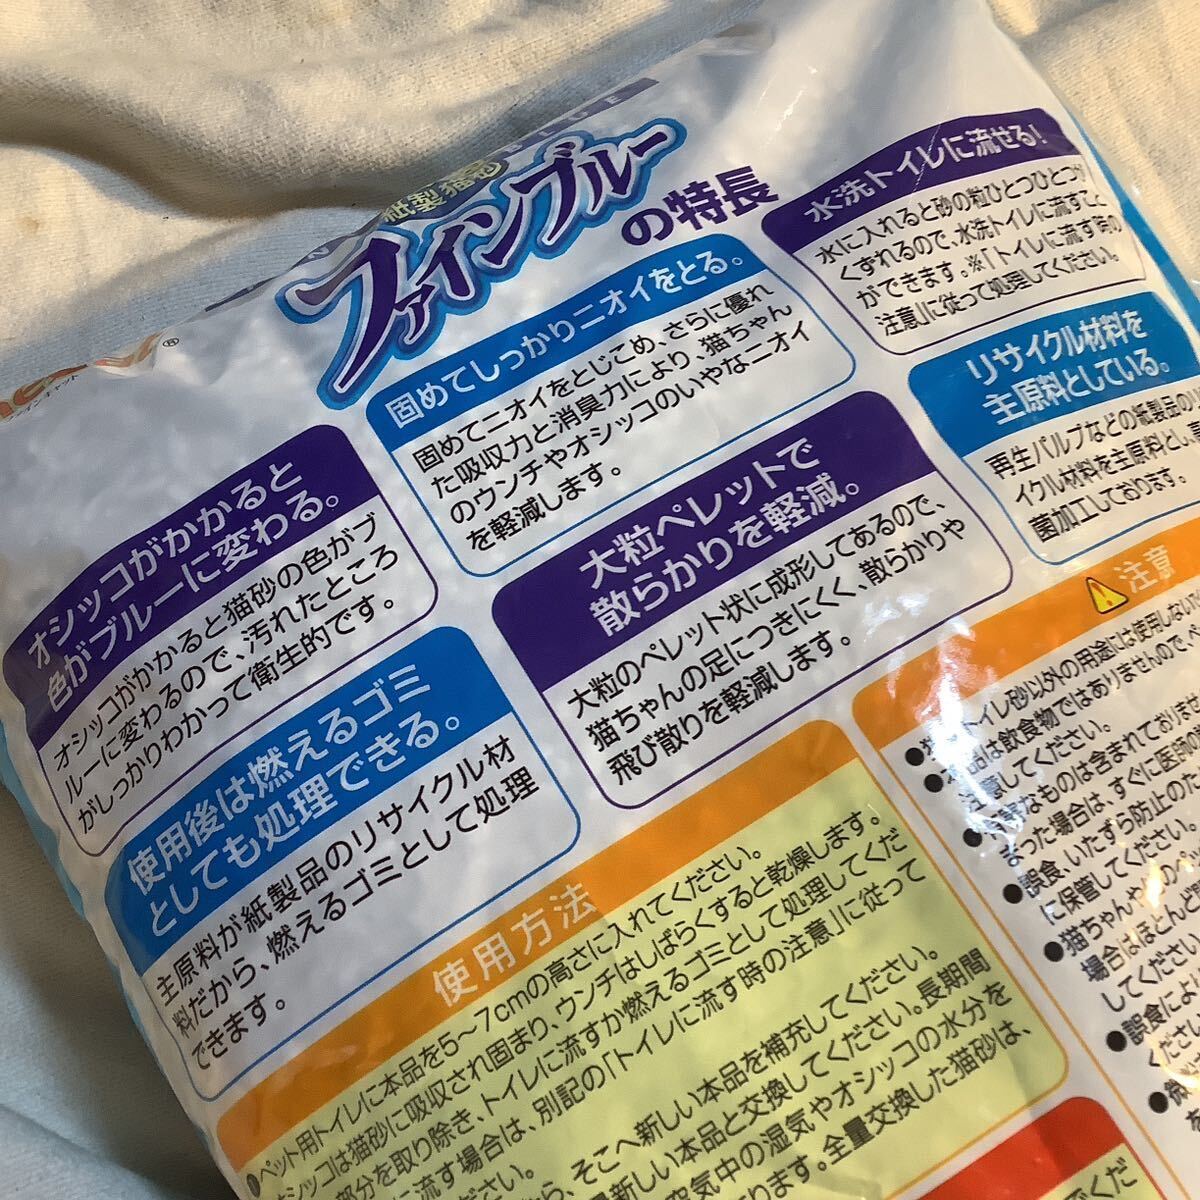  бумажный кошка песок кошка песок штраф голубой 12L 3 пакет скупка исключая 500 иен супер 10% товар в подарок большой пакет 1-2-3 пакет ... комплектация для небольшое количество 3L. лот число много степени выгода 100